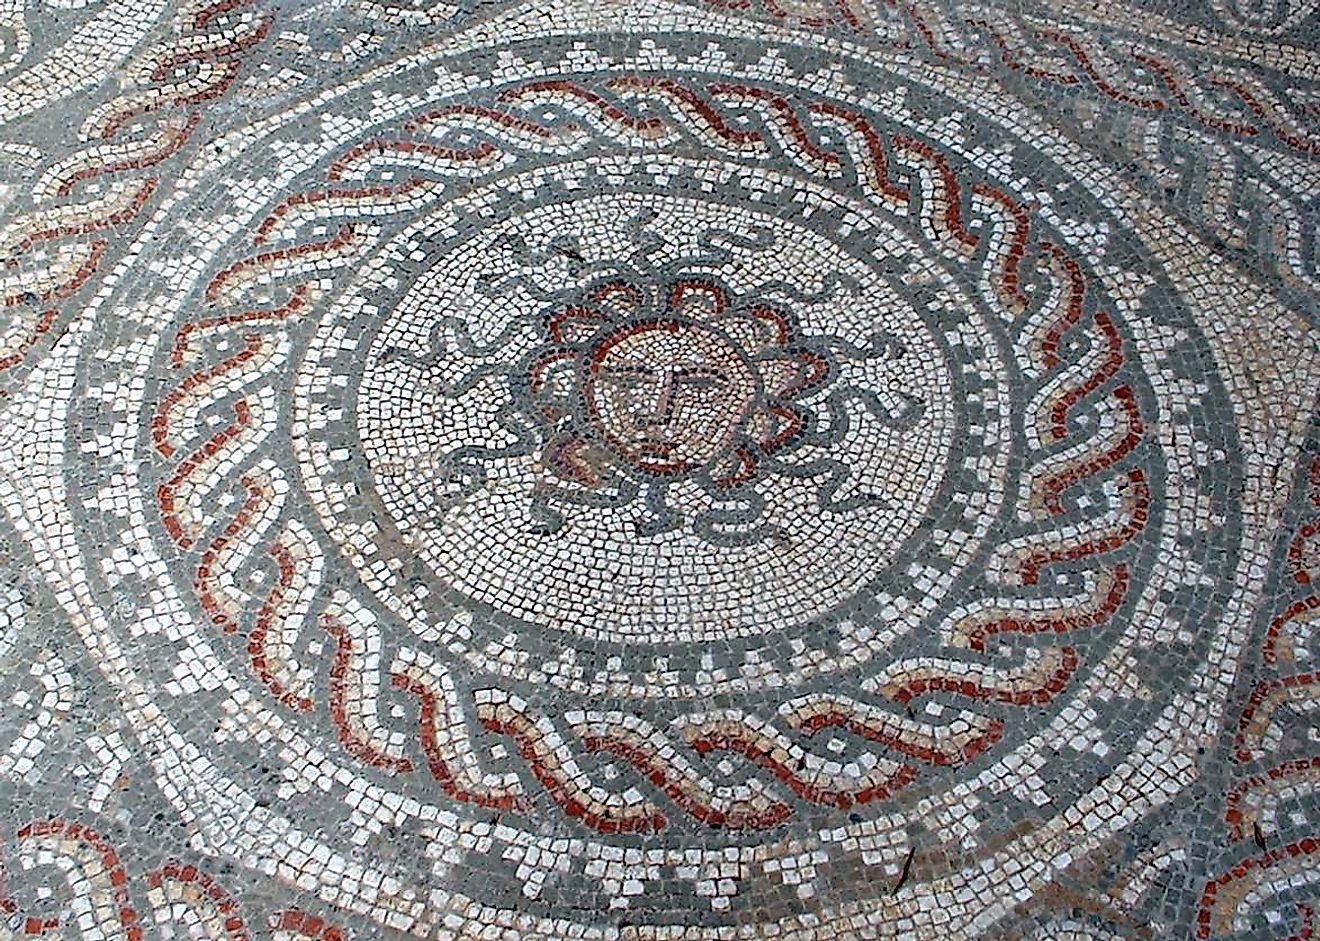 Bignor Villa Medusa Mosaic. 